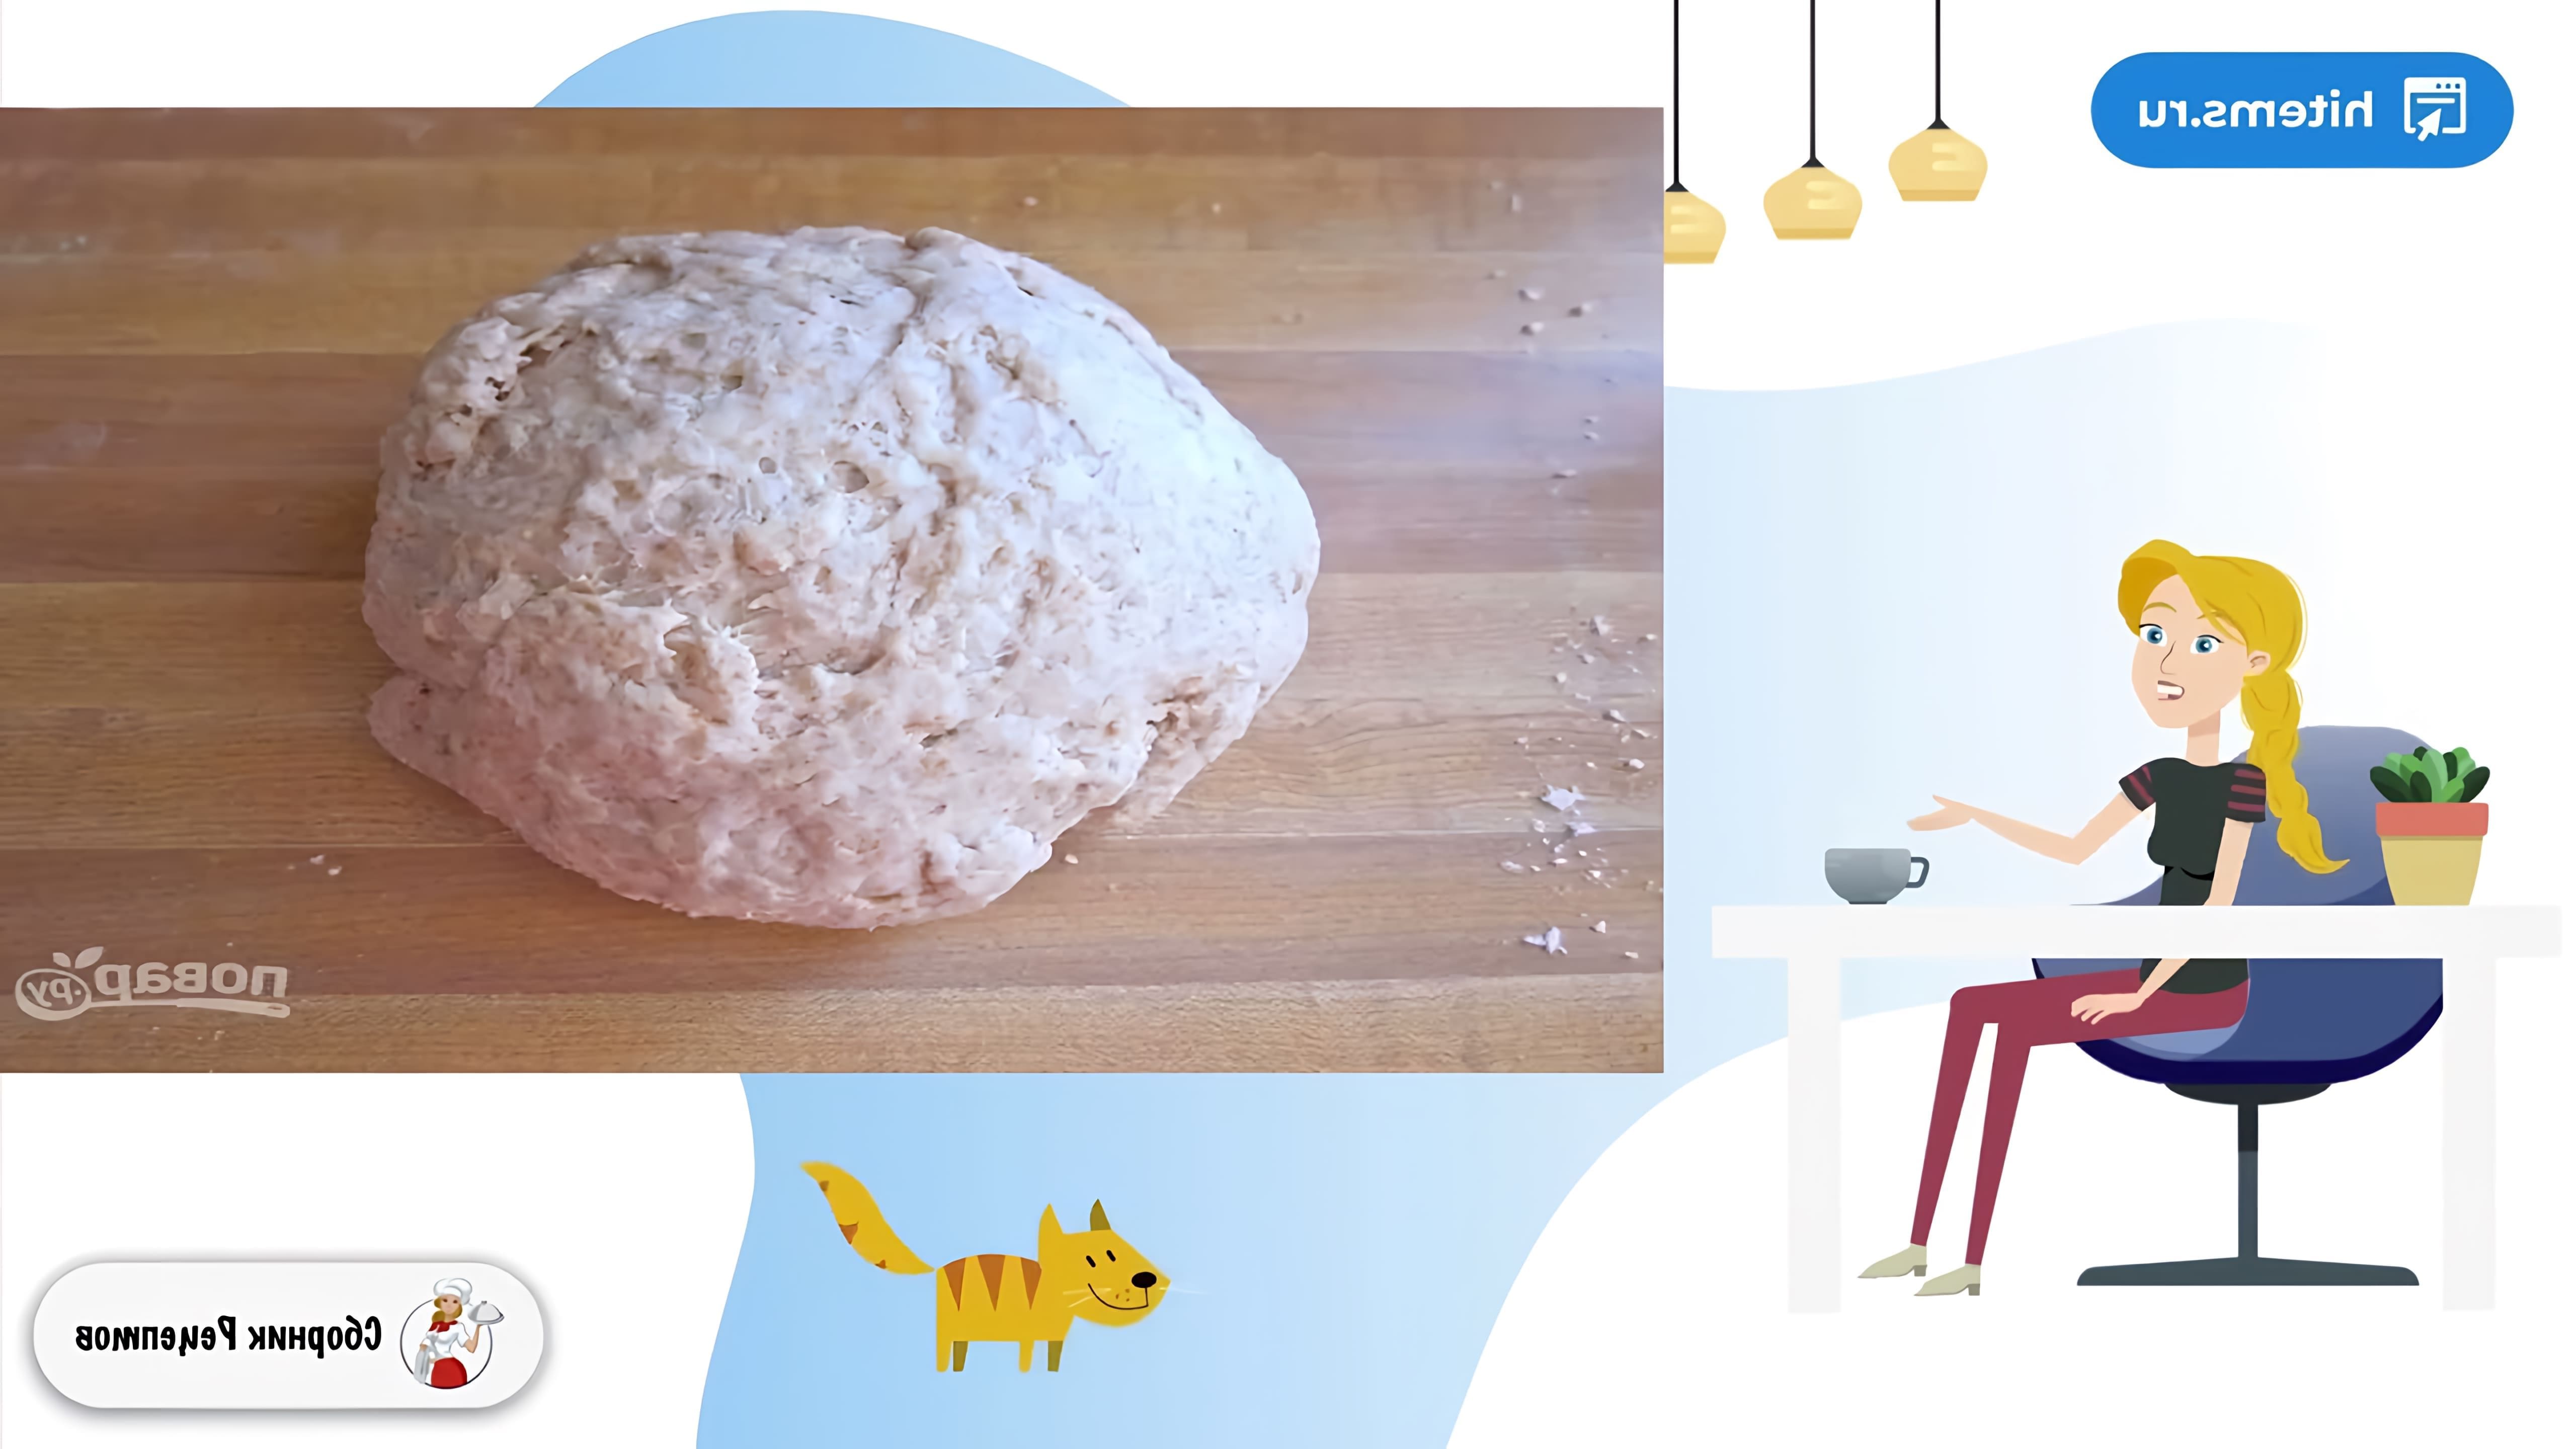 В этом видео демонстрируется рецепт приготовления тортилий - традиционных мексиканских лепешек